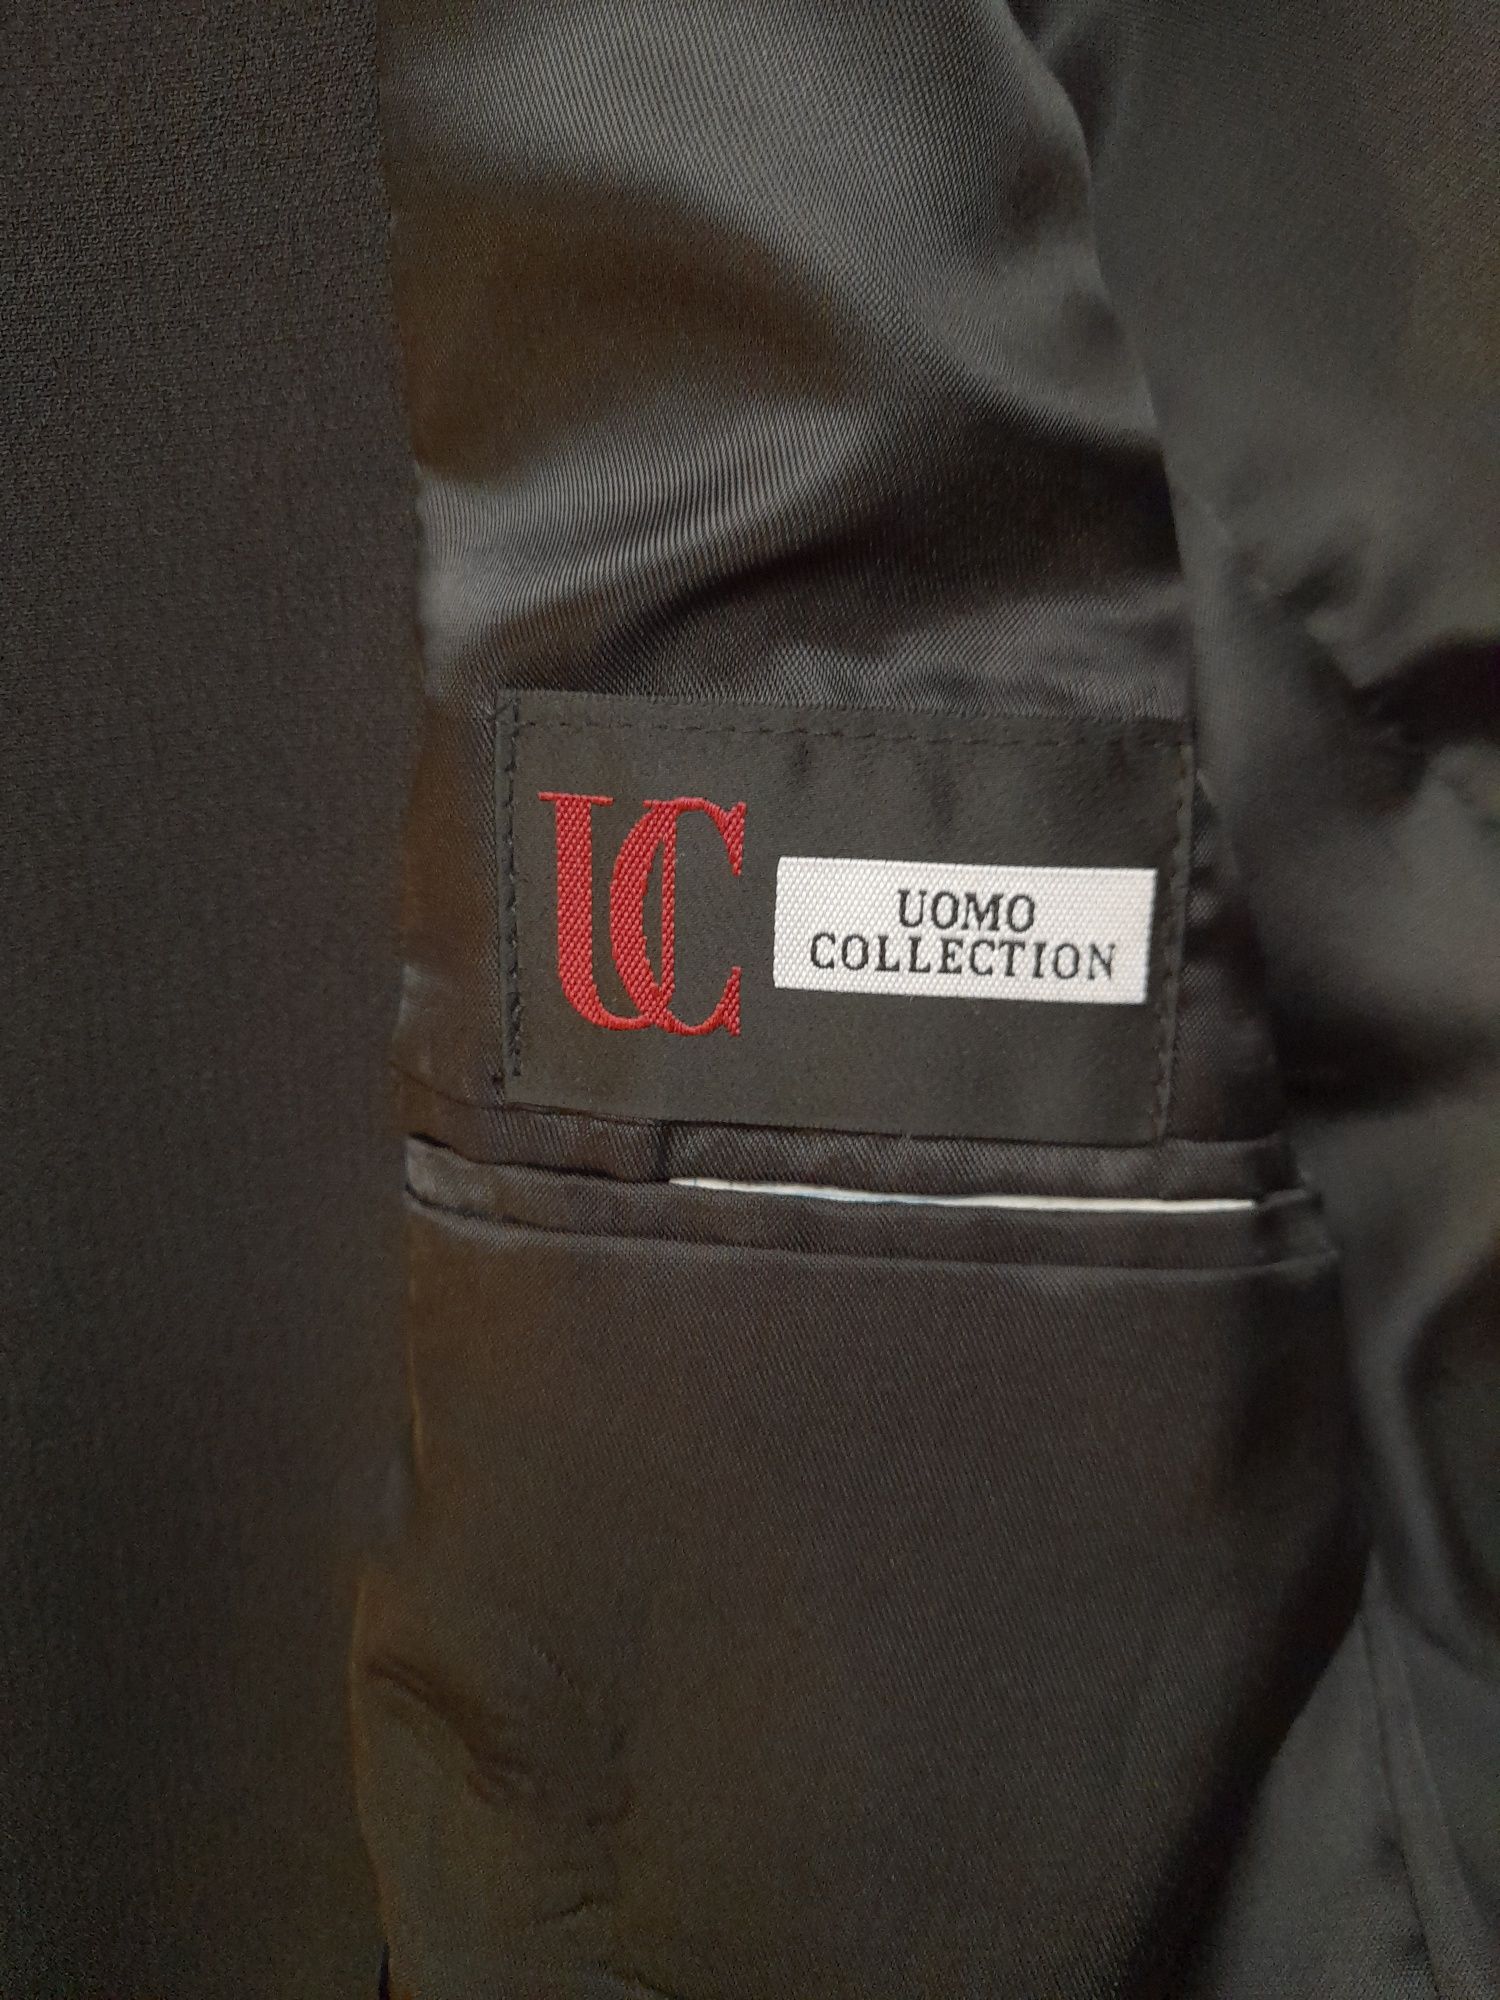 Кардиган, піджак подовжений, тренч чоловічий Uomo Collection